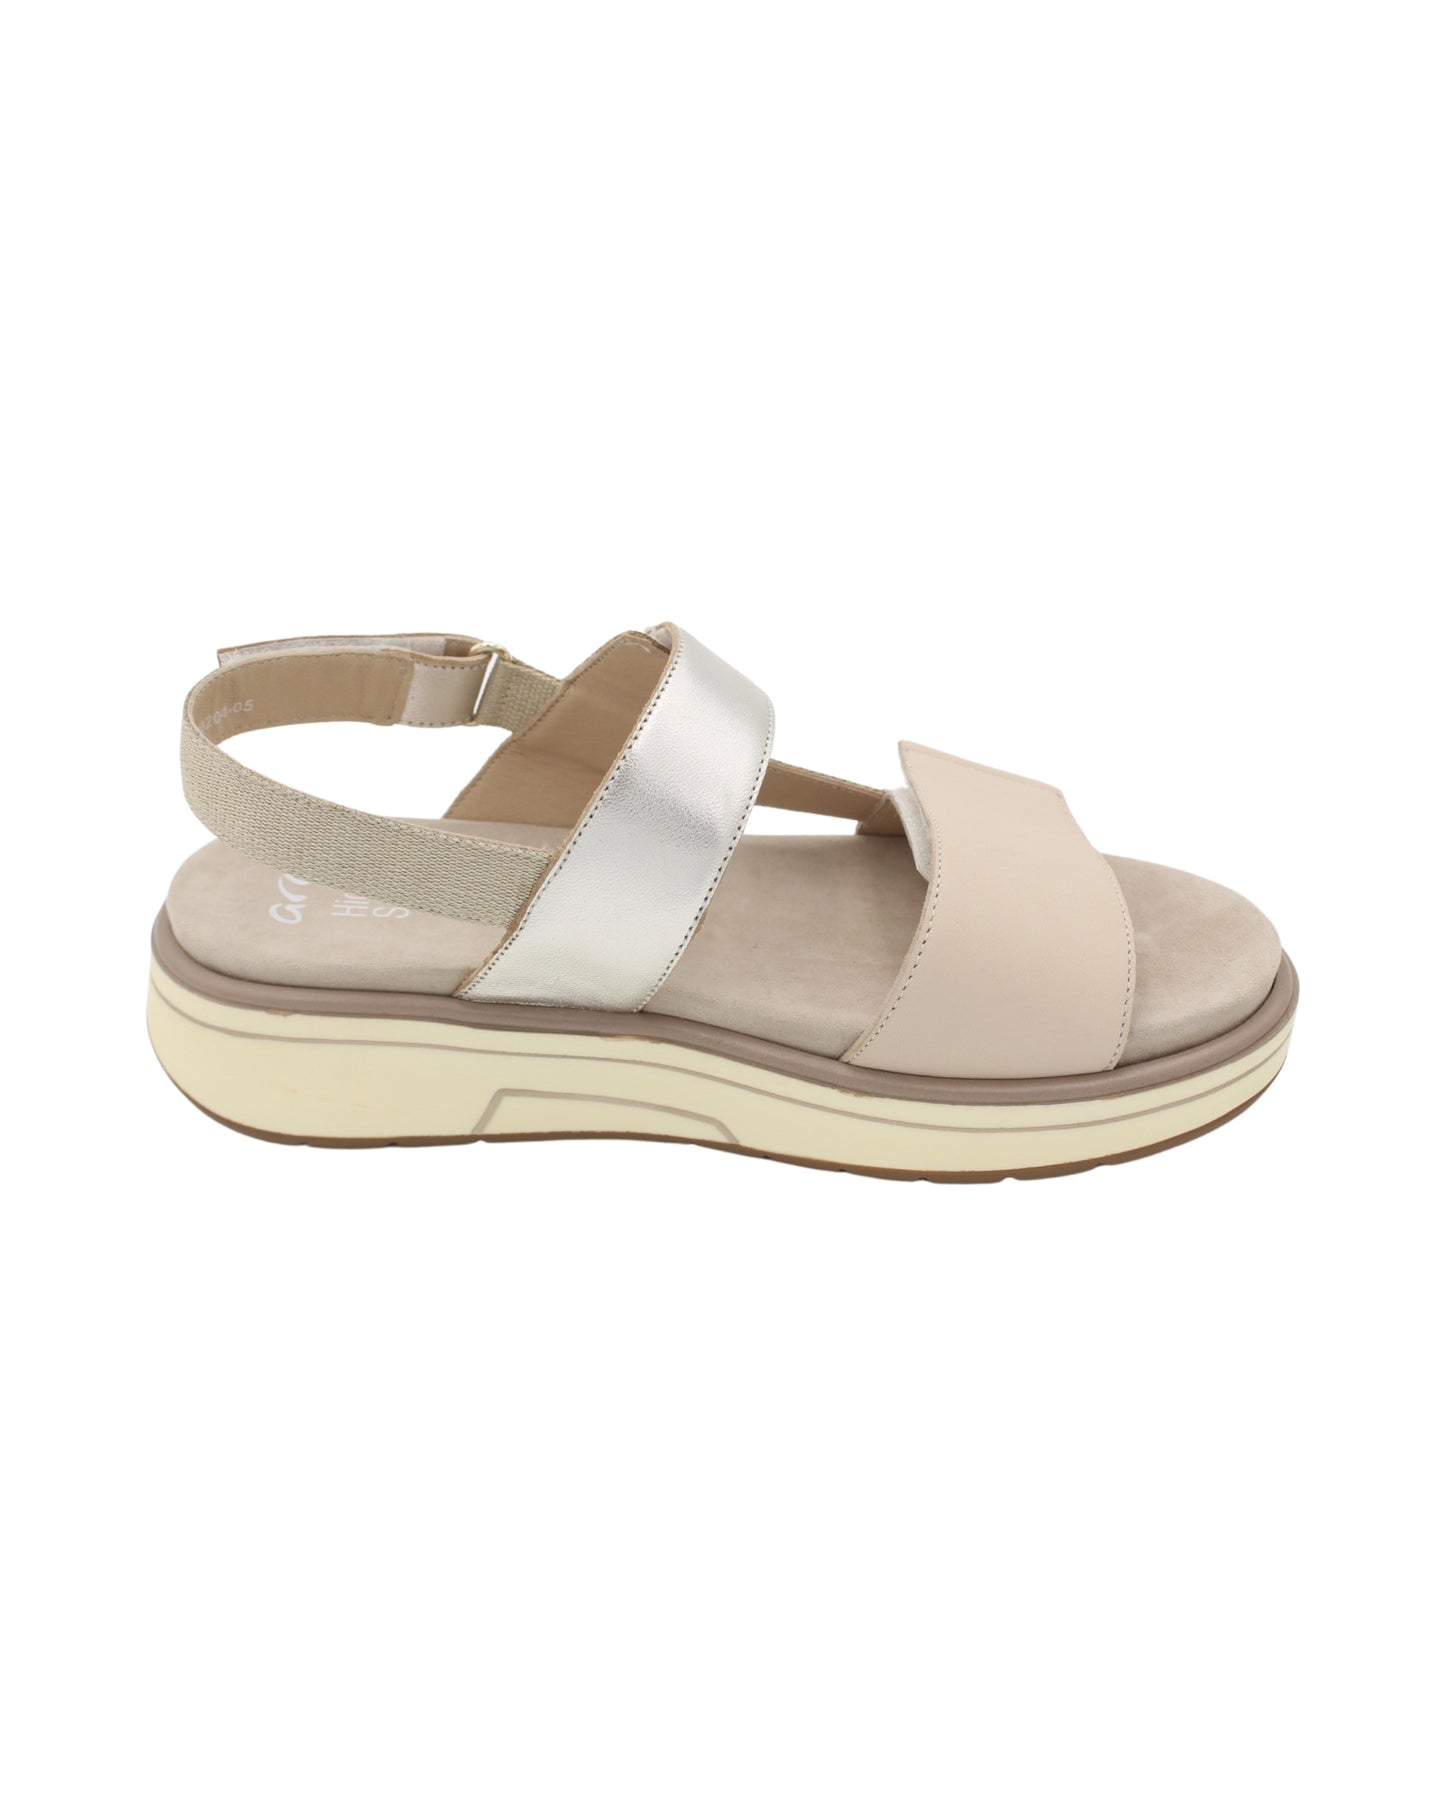 Ara - Ladies Shoes Sandals Beige, Platinum (2236)